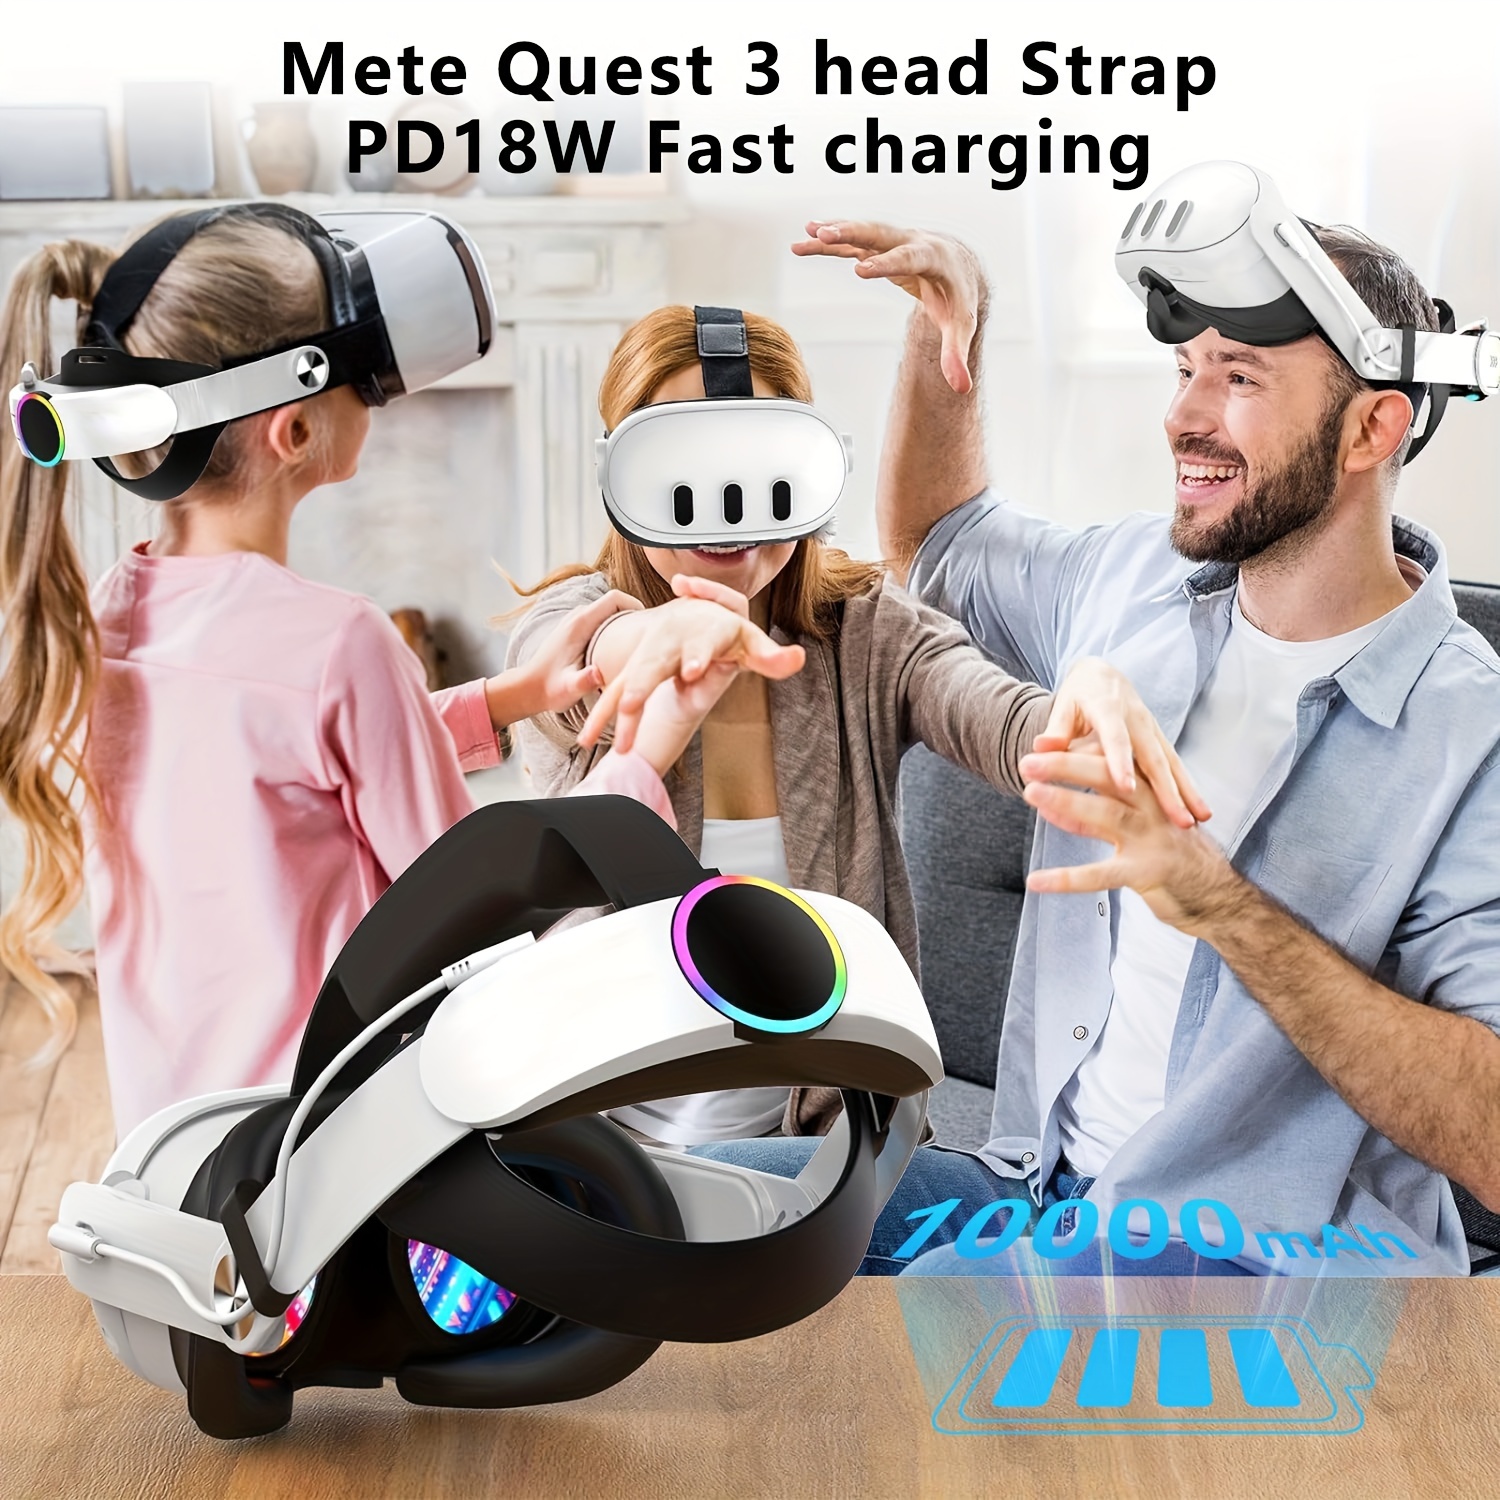 Funda rígida de transporte para Meta Quest 3, accesorio compatible con Meta  Quest 3 con diadema estándar, controlador táctil y otros accesorios